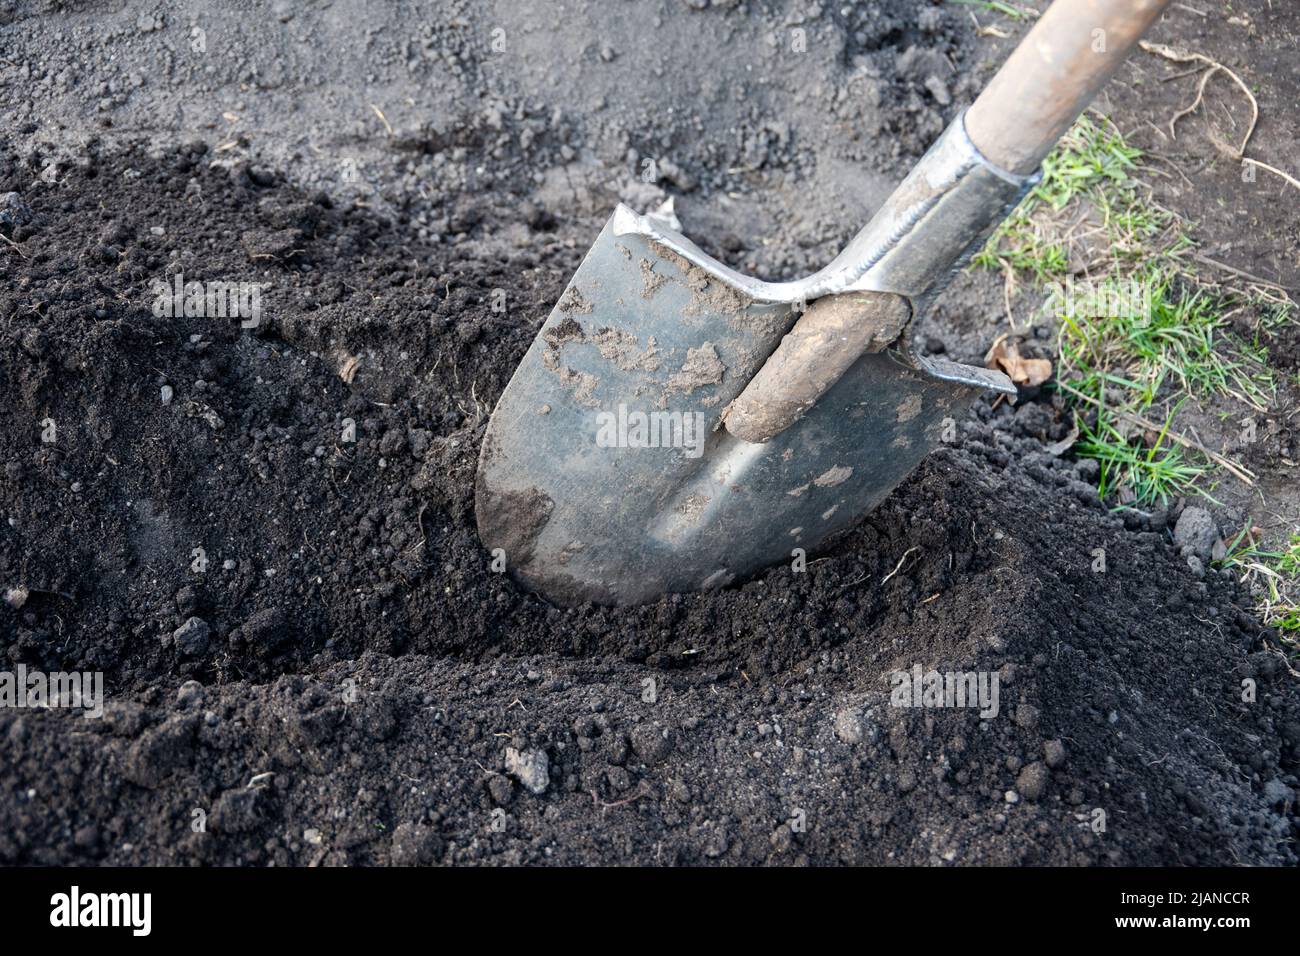 Cavar un agujero para plantar árboles con una vieja pala de metal. Trabajos de temporada en el jardín. Preparación del suelo para plantar. Cosecha. Foto de stock